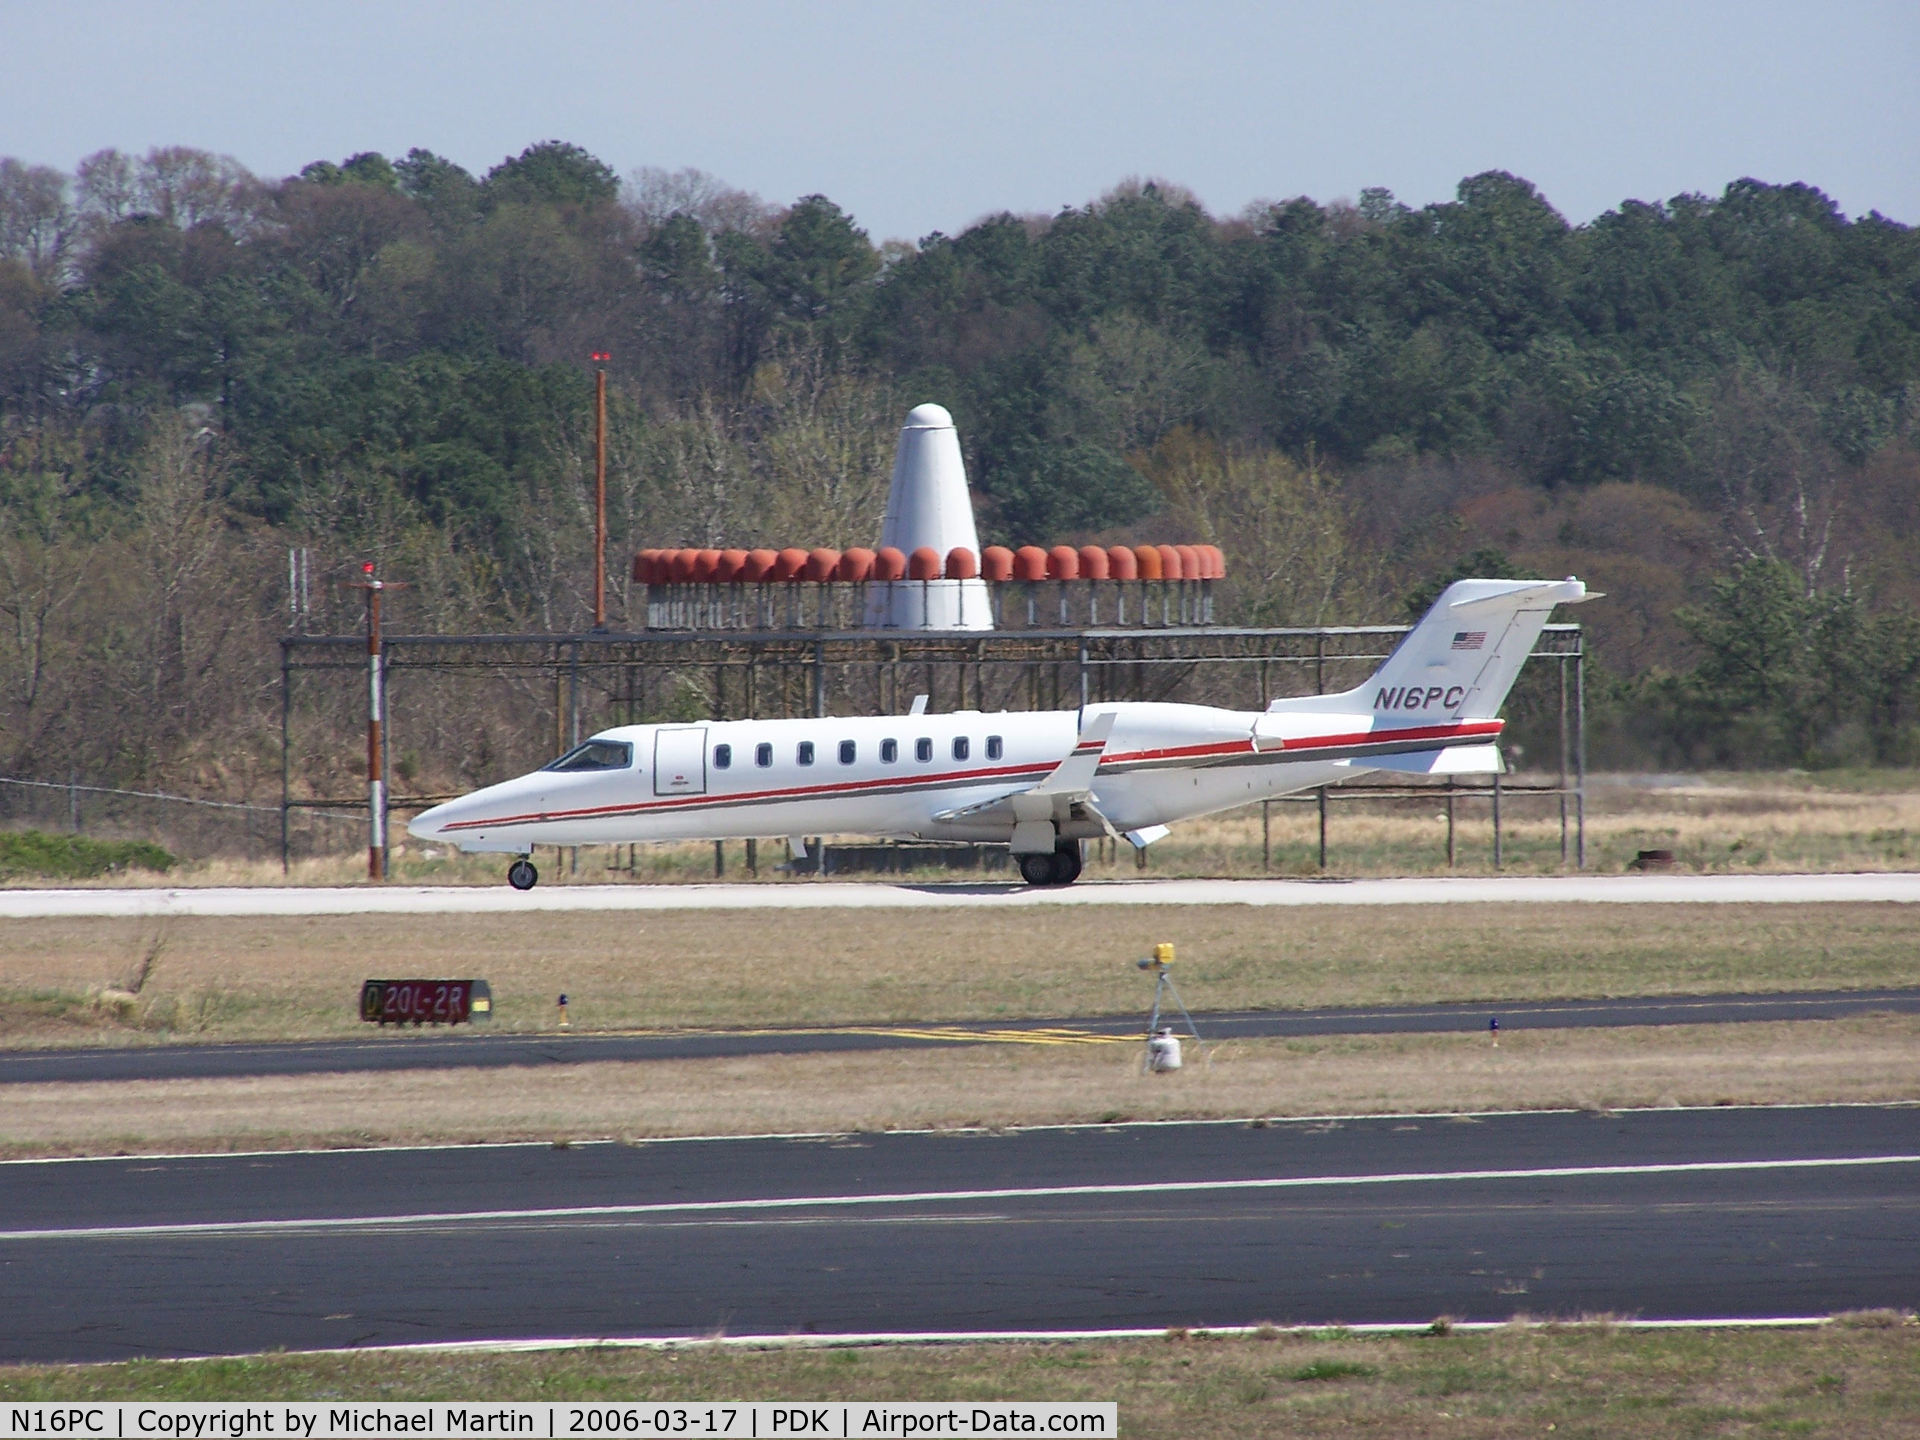 N16PC, 2006 Learjet 45 C/N 319, Landing PDK on 20L